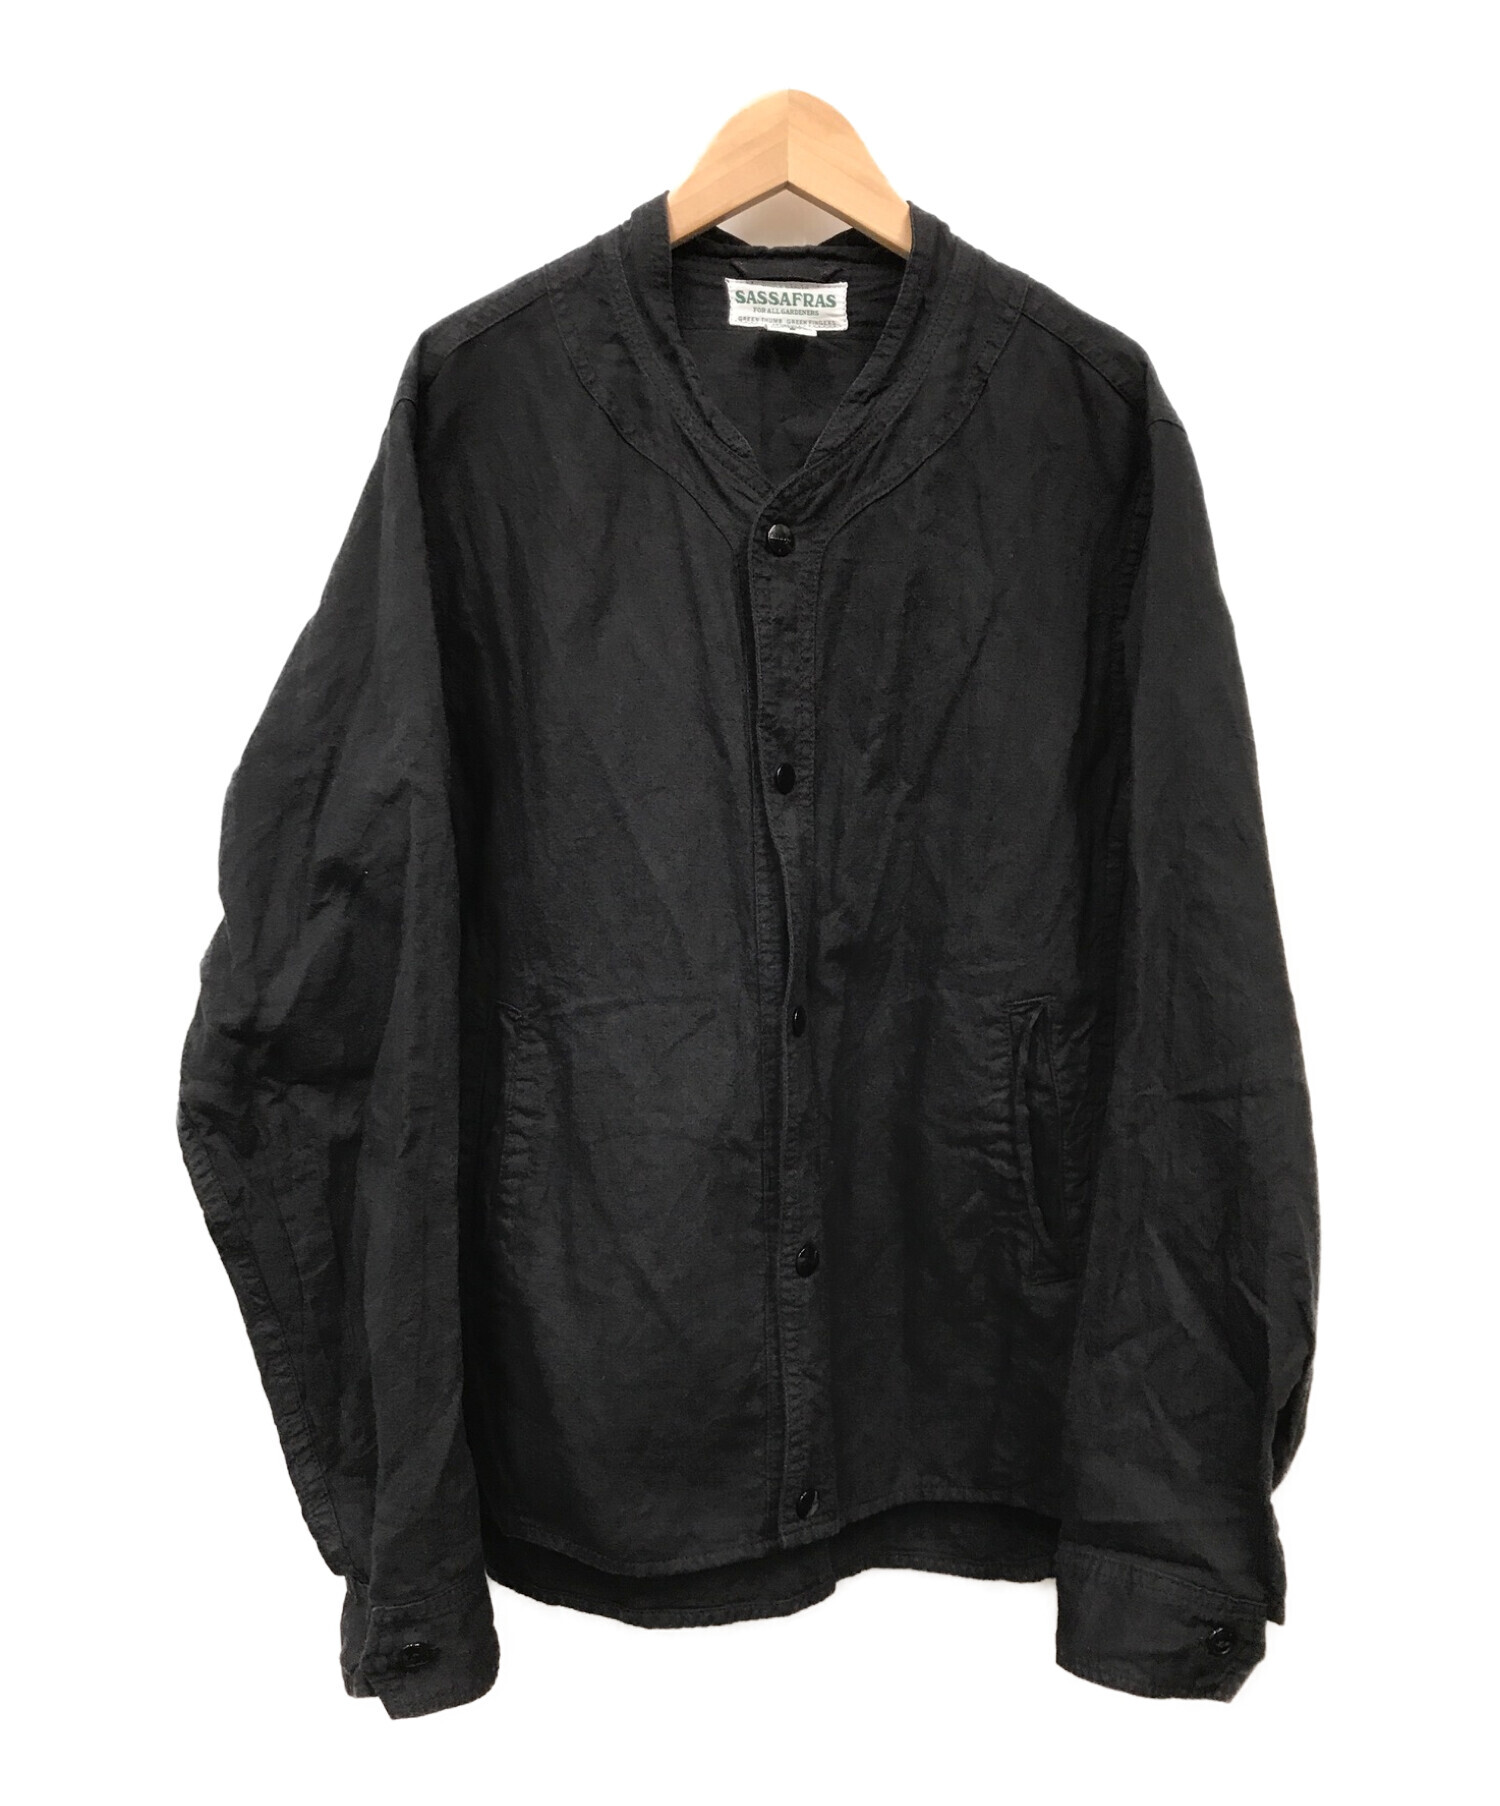 SASSAFRAS (ササフラス) ガーデニアジャケット ブラック サイズ:S